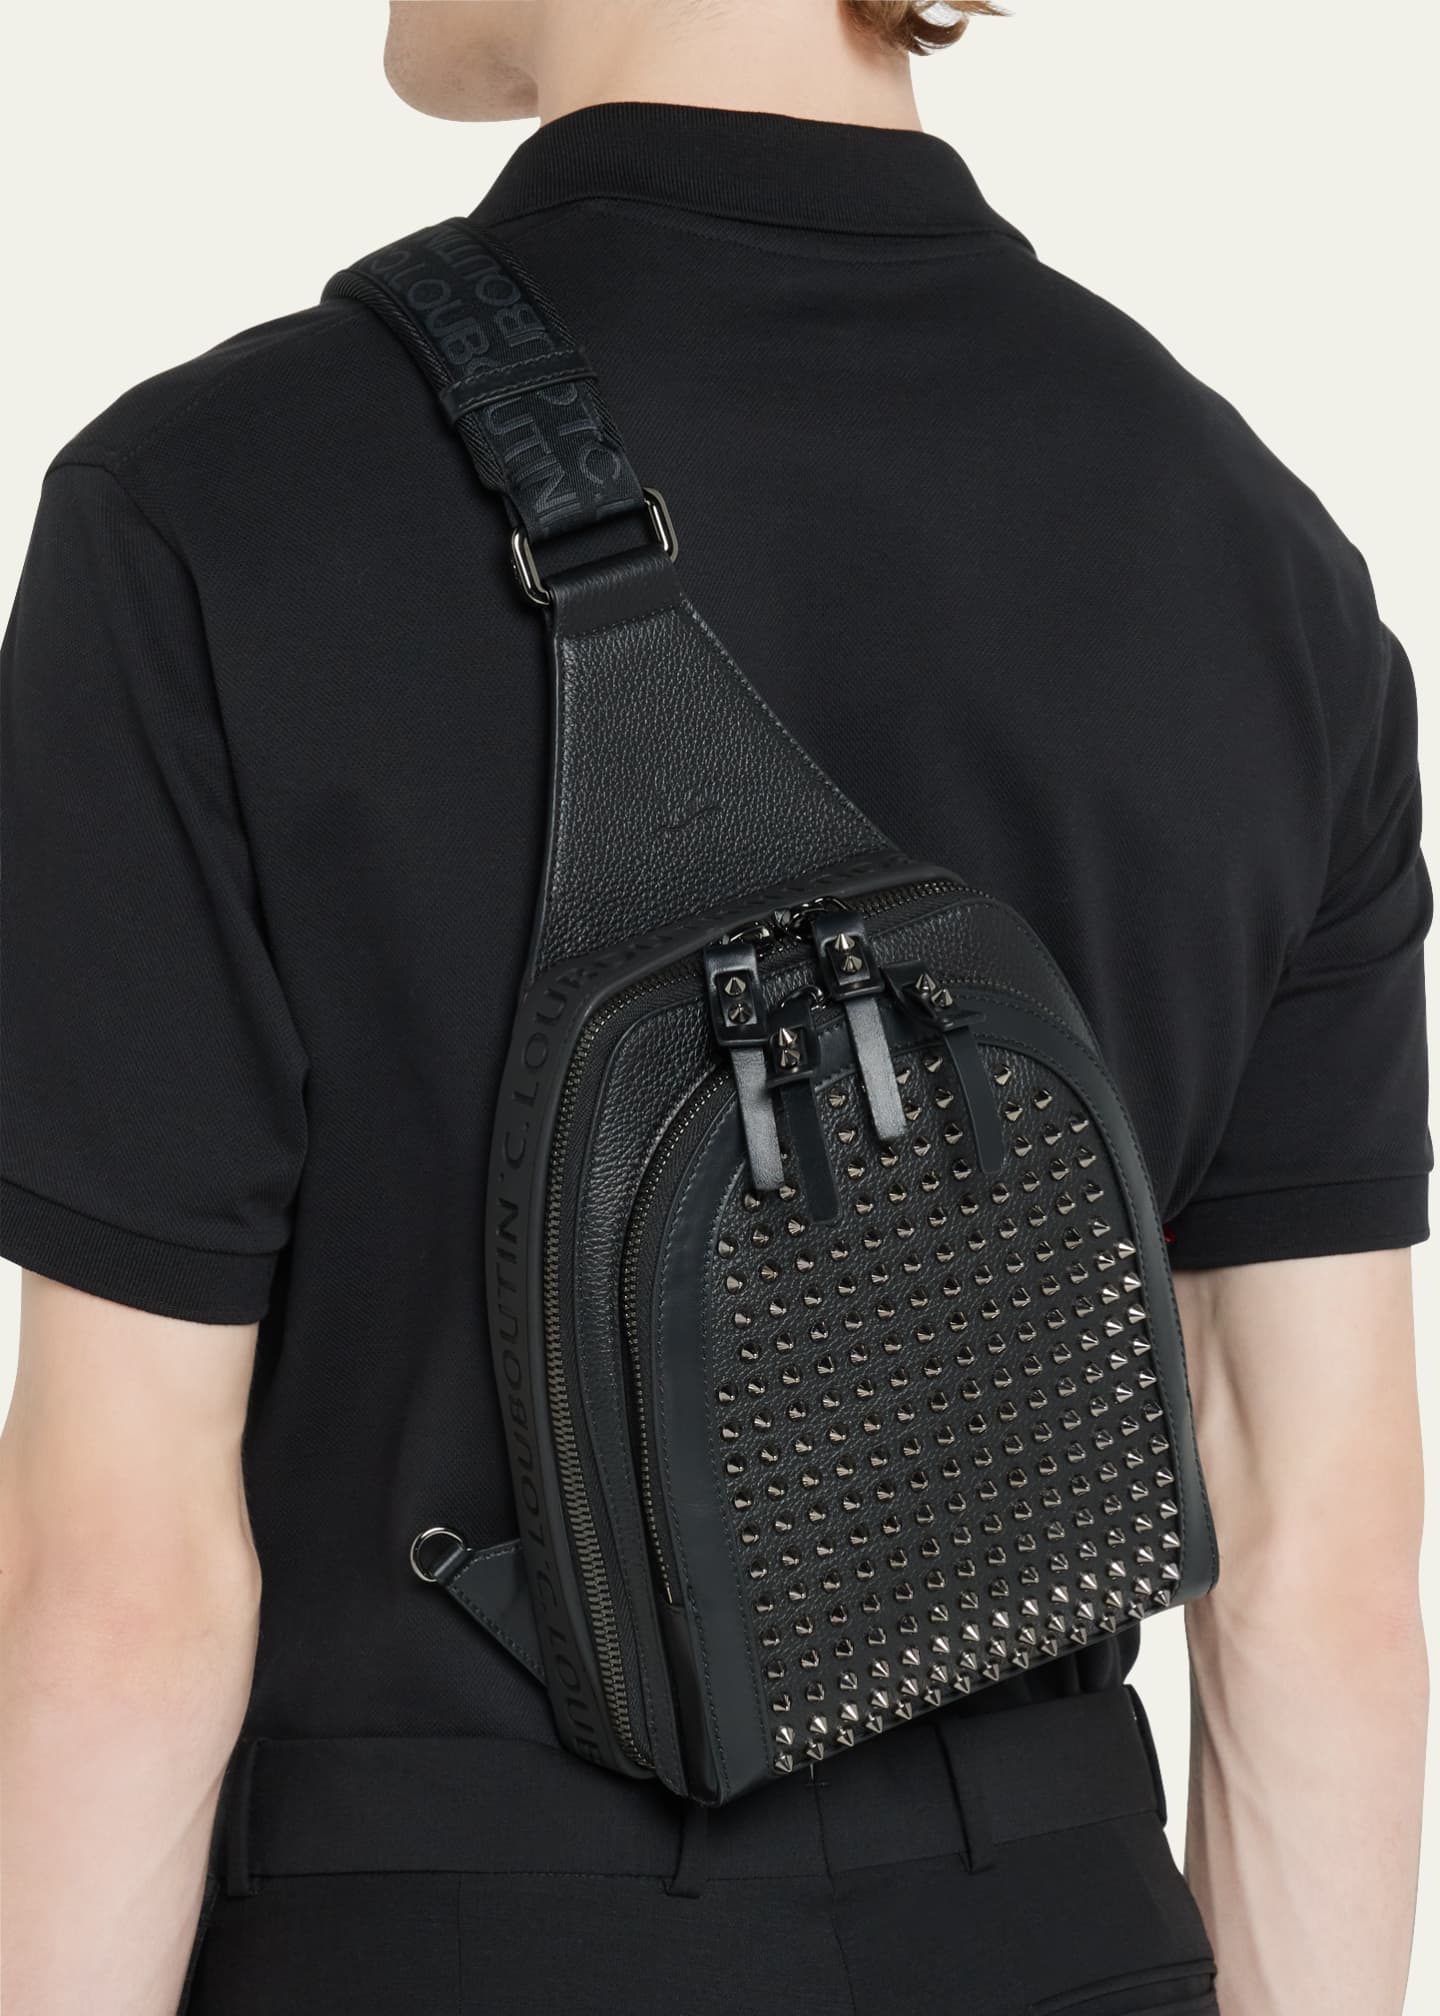 Christian Louboutin Loubilab Spike Shoulder Bag in Black for Men